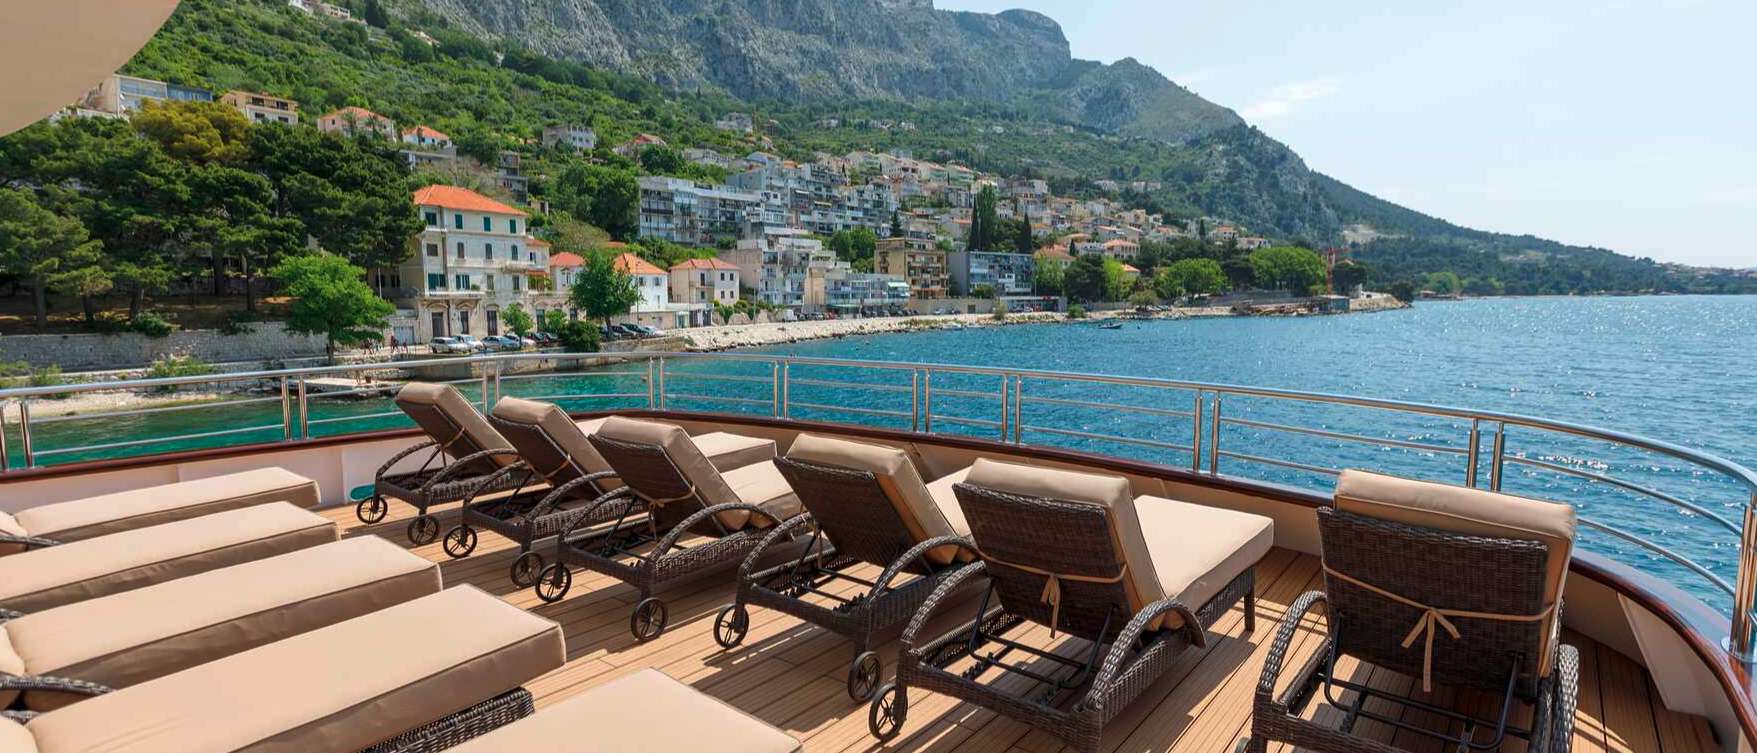 QUEEN ELEGANZA - Yacht Charter Kraljevica & Boat hire in Croatia 4